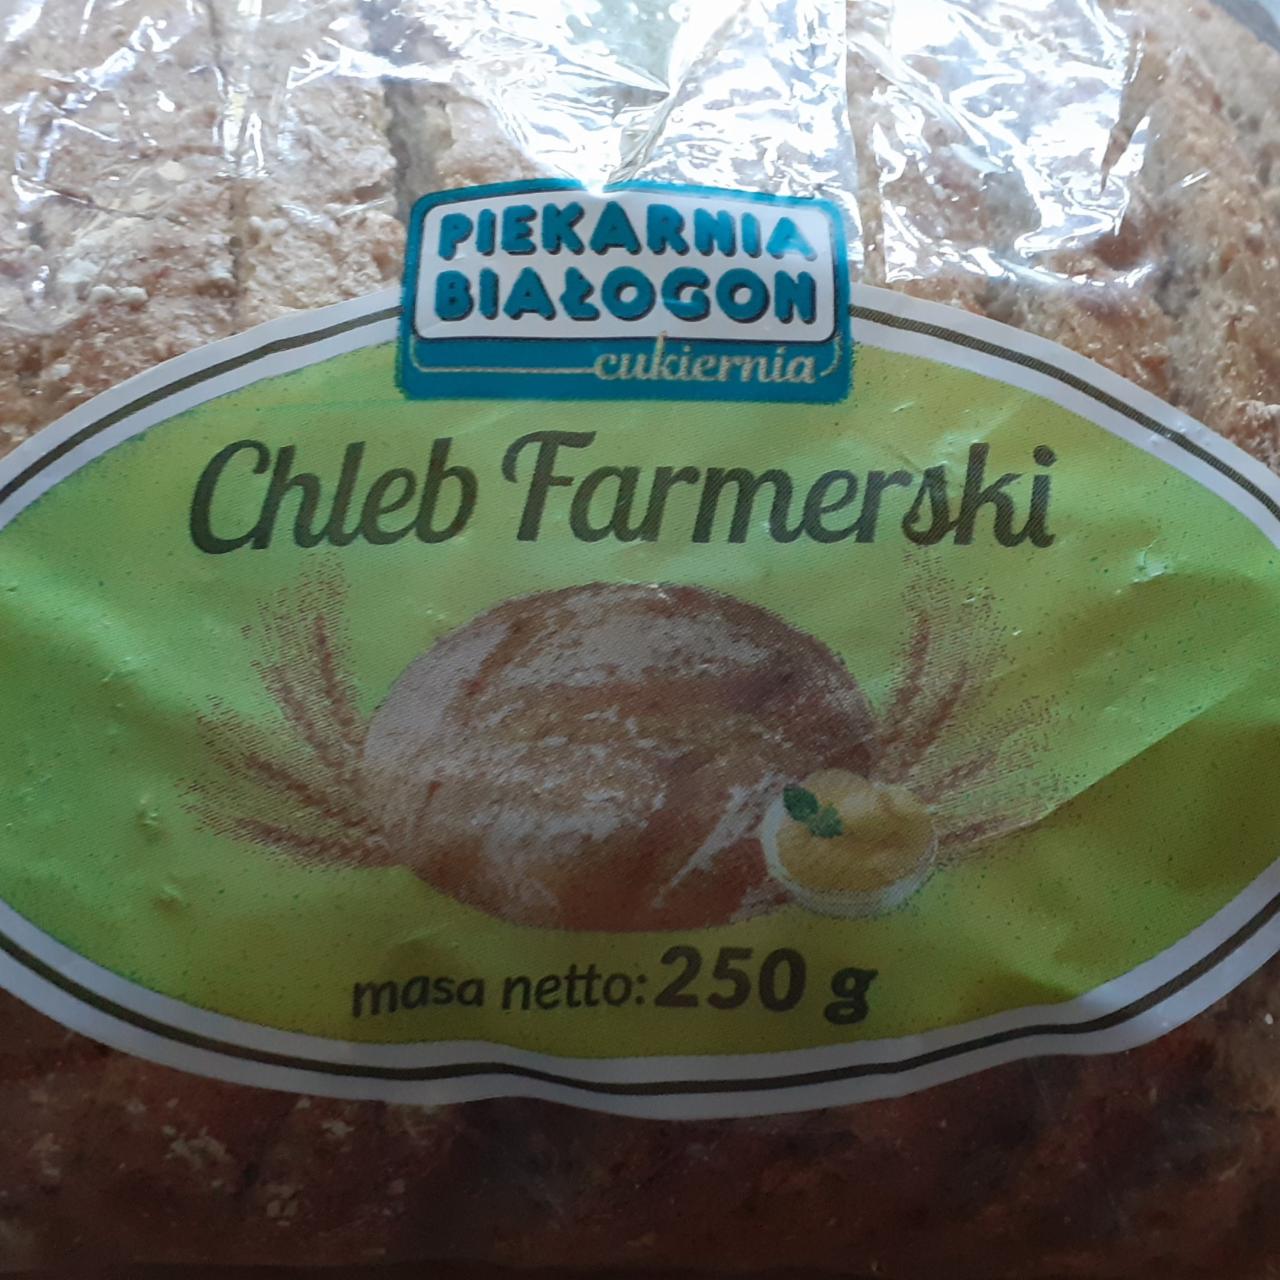 Zdjęcia - Chleb farmerski piekarnia Białogon